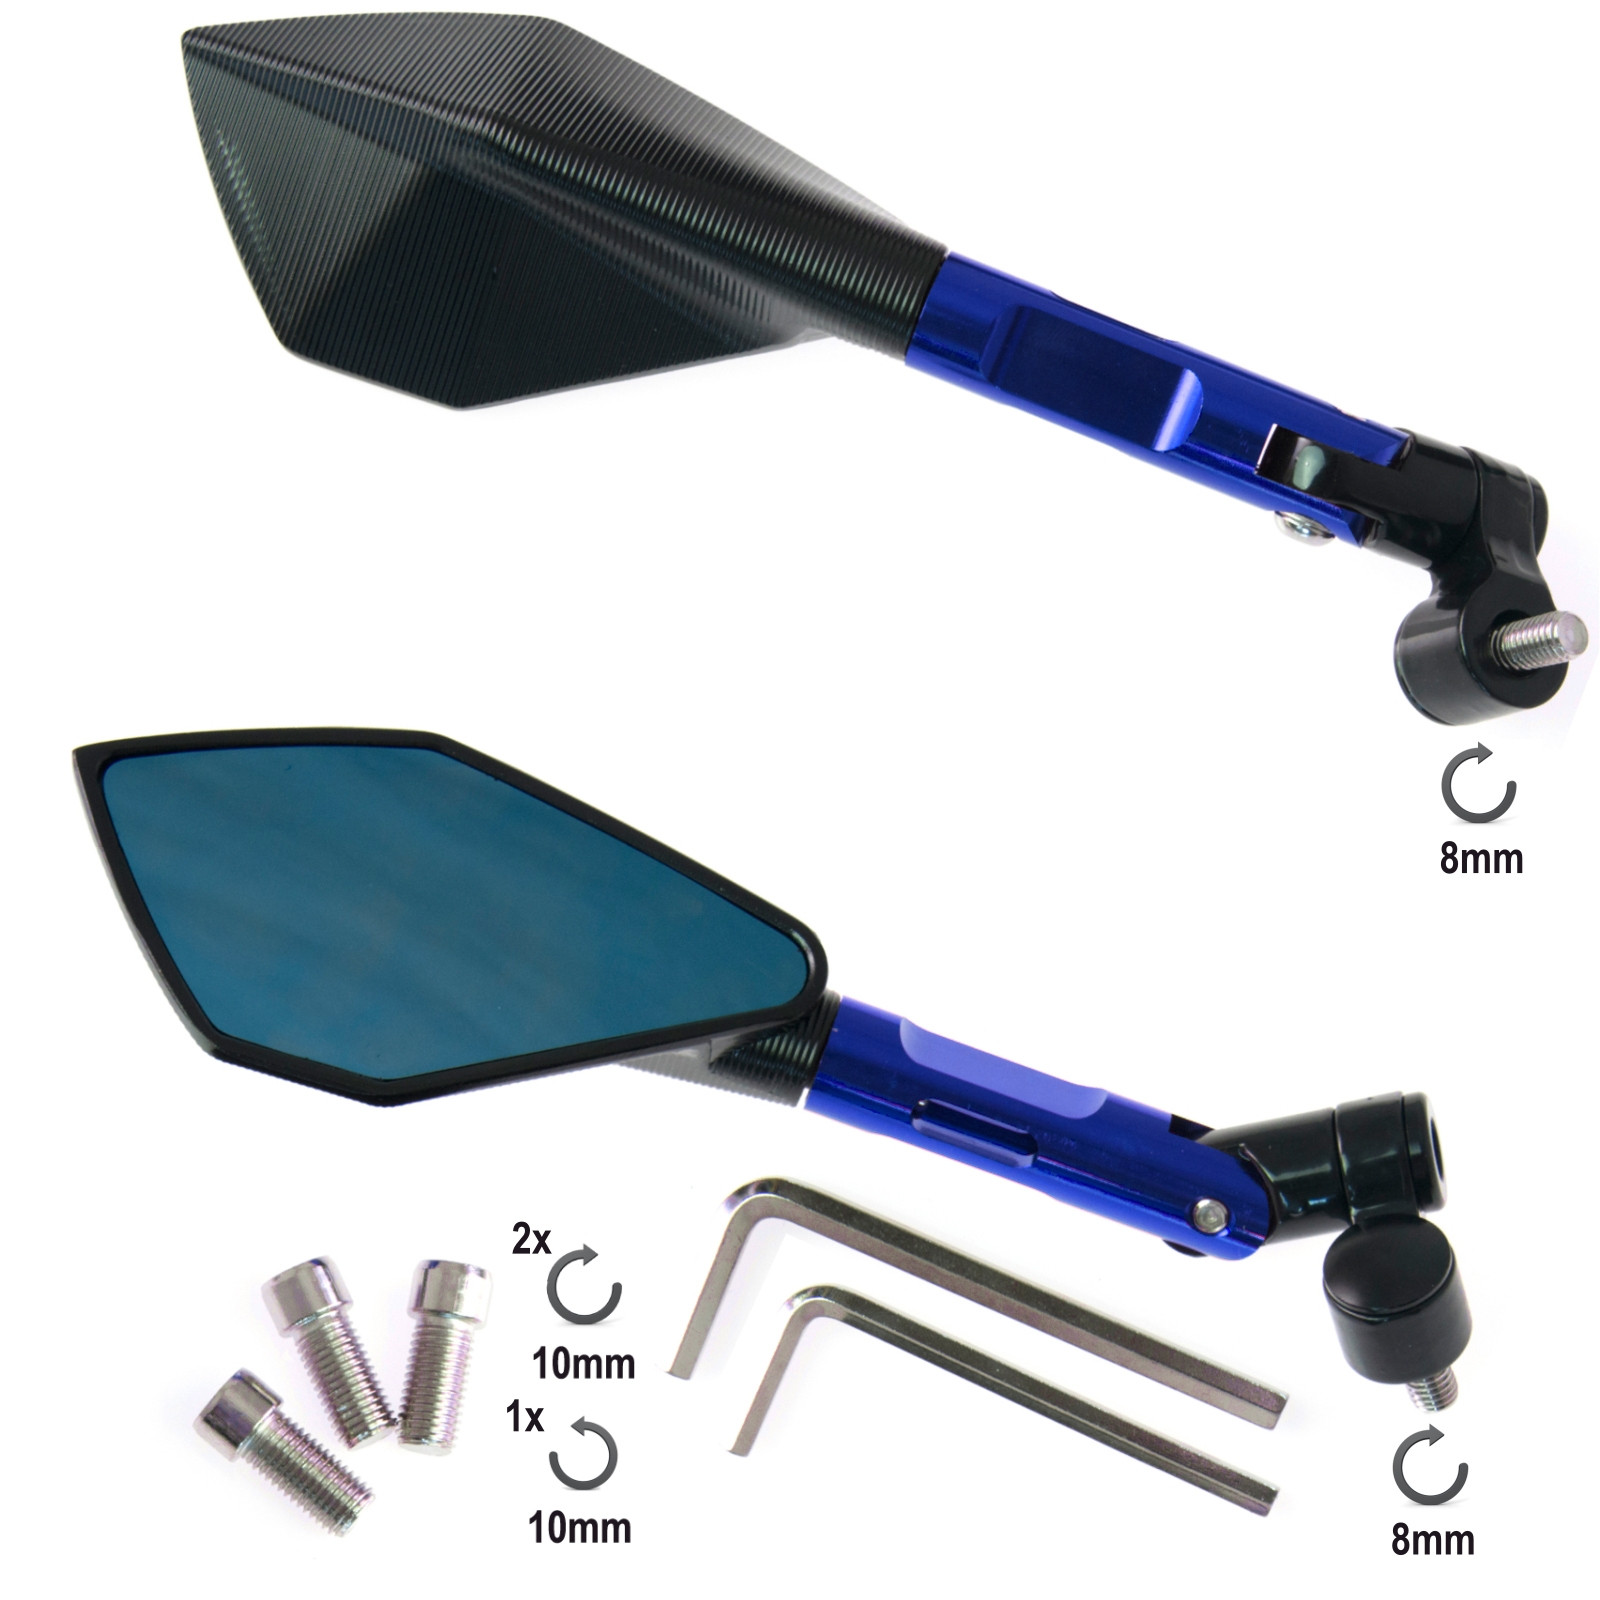 Abbigliamento Moto e Accessori - Coppia Specchietti Moto Blu